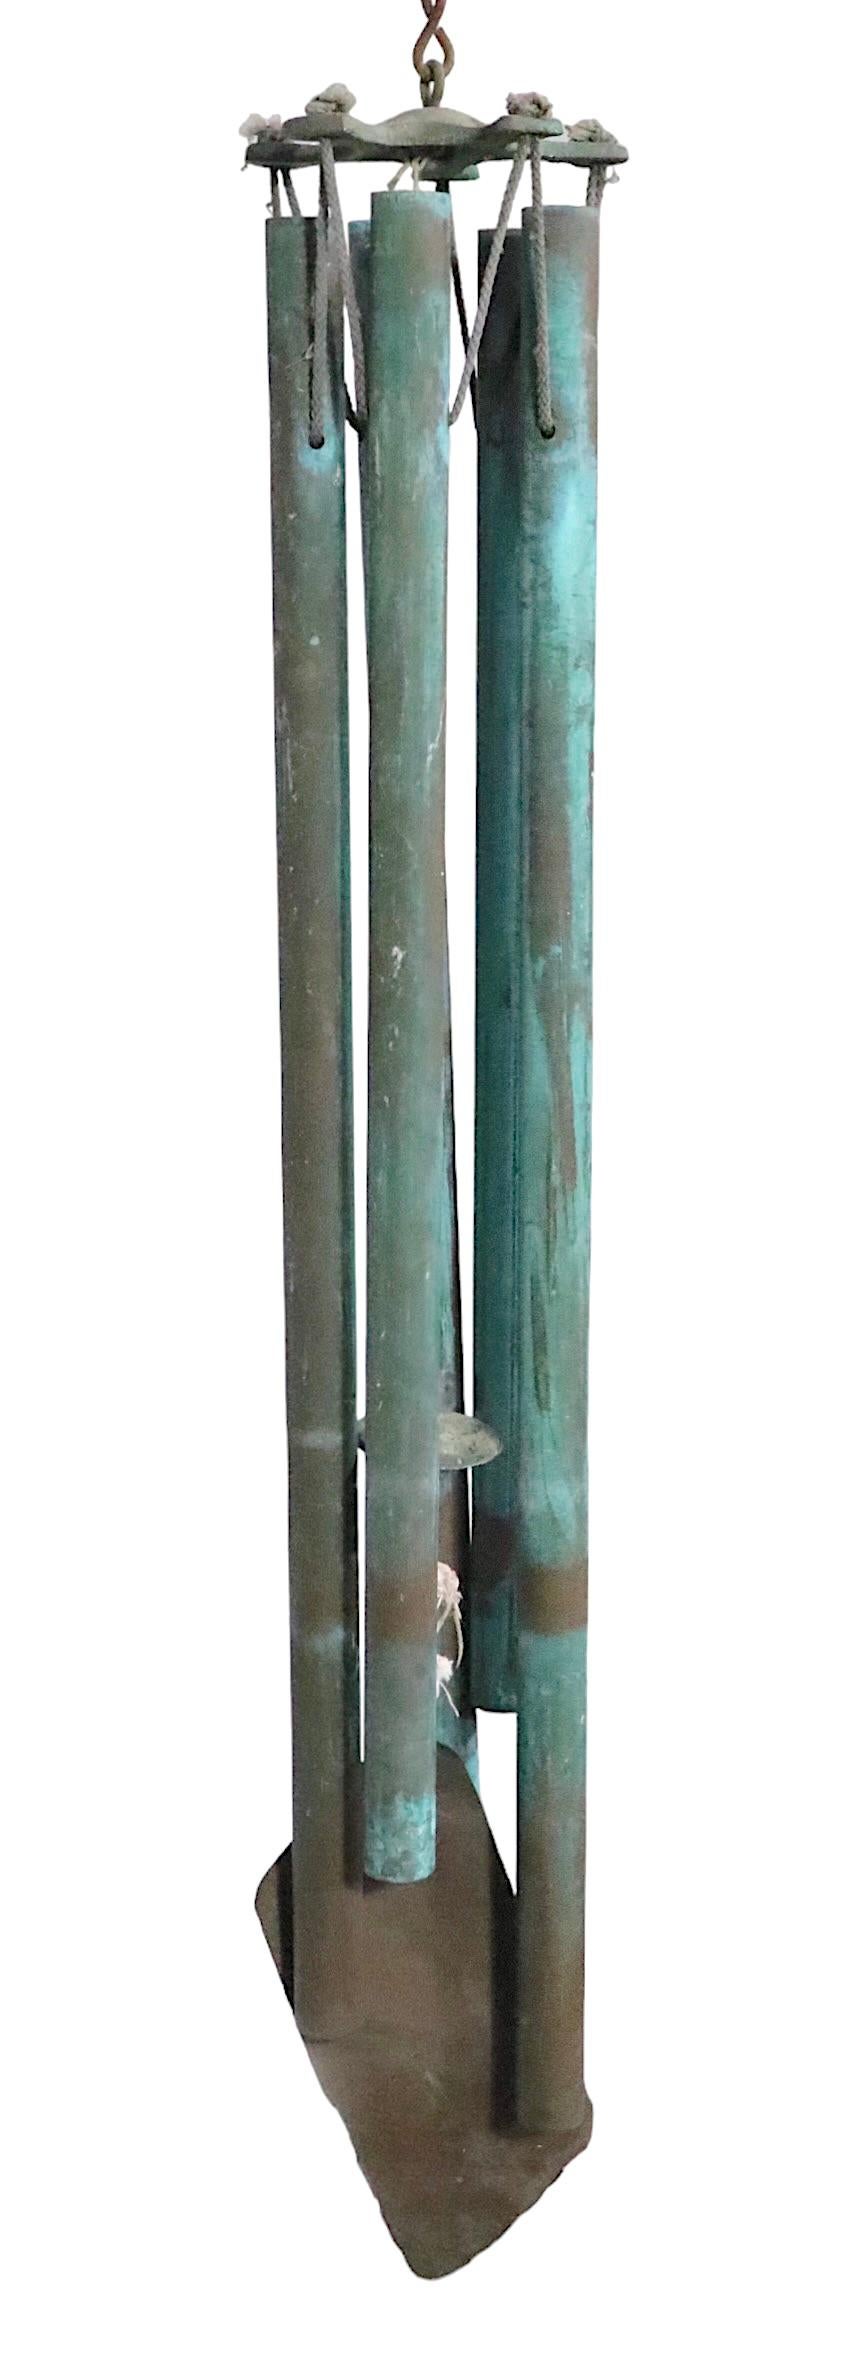 Brutalistisches Windspiel aus Verdigris-Bronze aus den 1970er Jahren. Dieses faszinierende Glockenspiel verfügt über fünf hängende Rohre in verschiedenen Längen, die bei Wind einen beruhigenden Ton erzeugen. Perfekte Ergänzung im brutalistischen